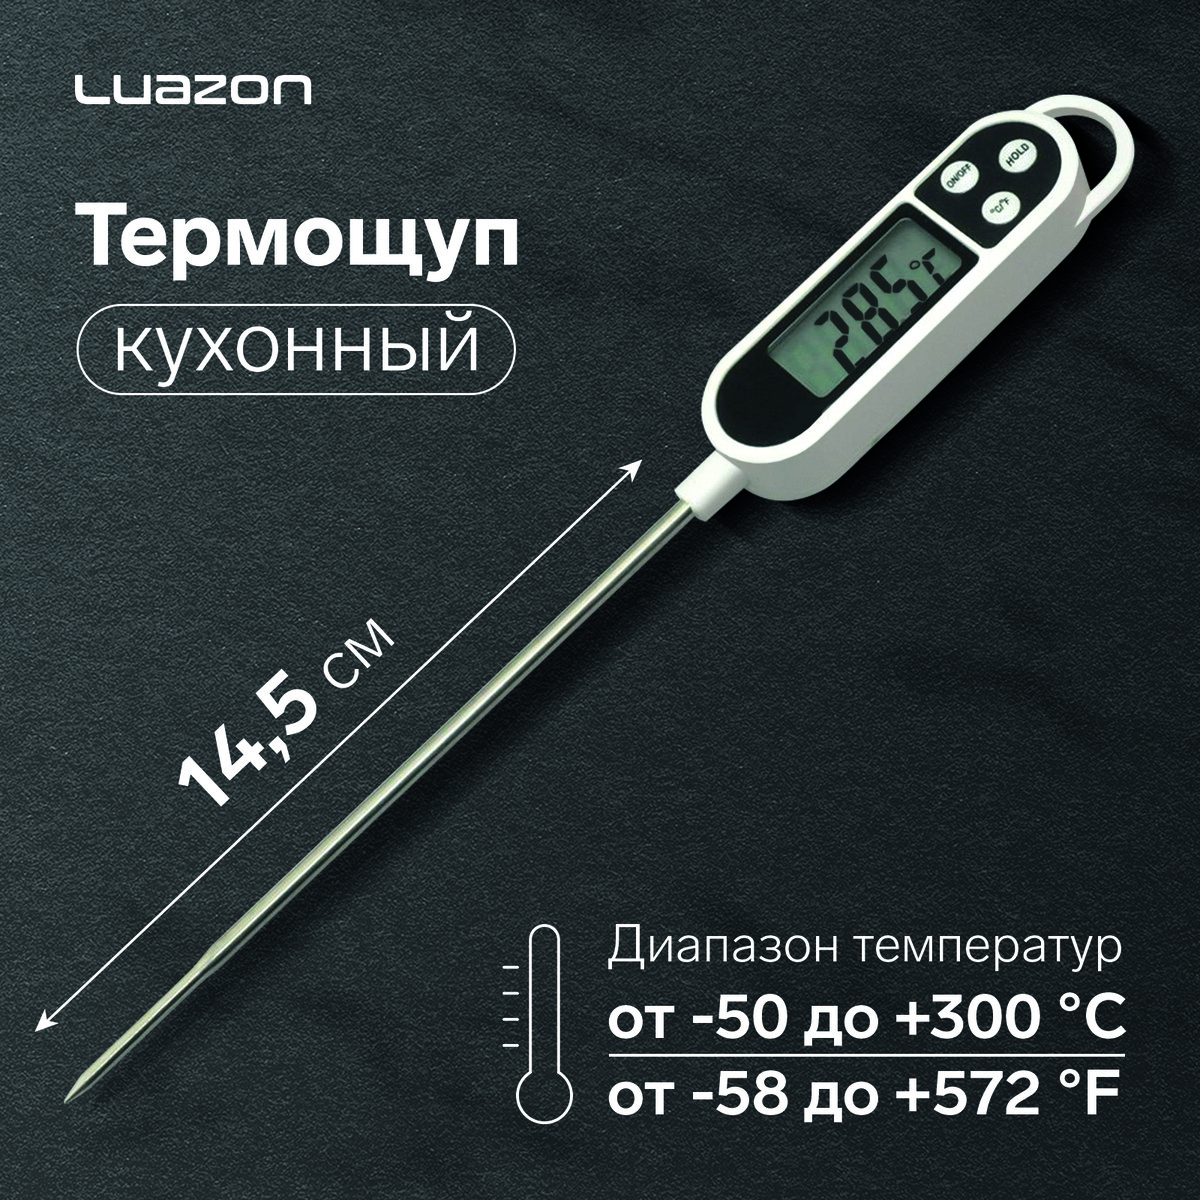 Термощуп кухонный luazon ltr-01, максимальная температура 300 °c, от lr44, белый термощуп кухонный luazon ta 288 максимальная температура 300 °c от lr44 белый